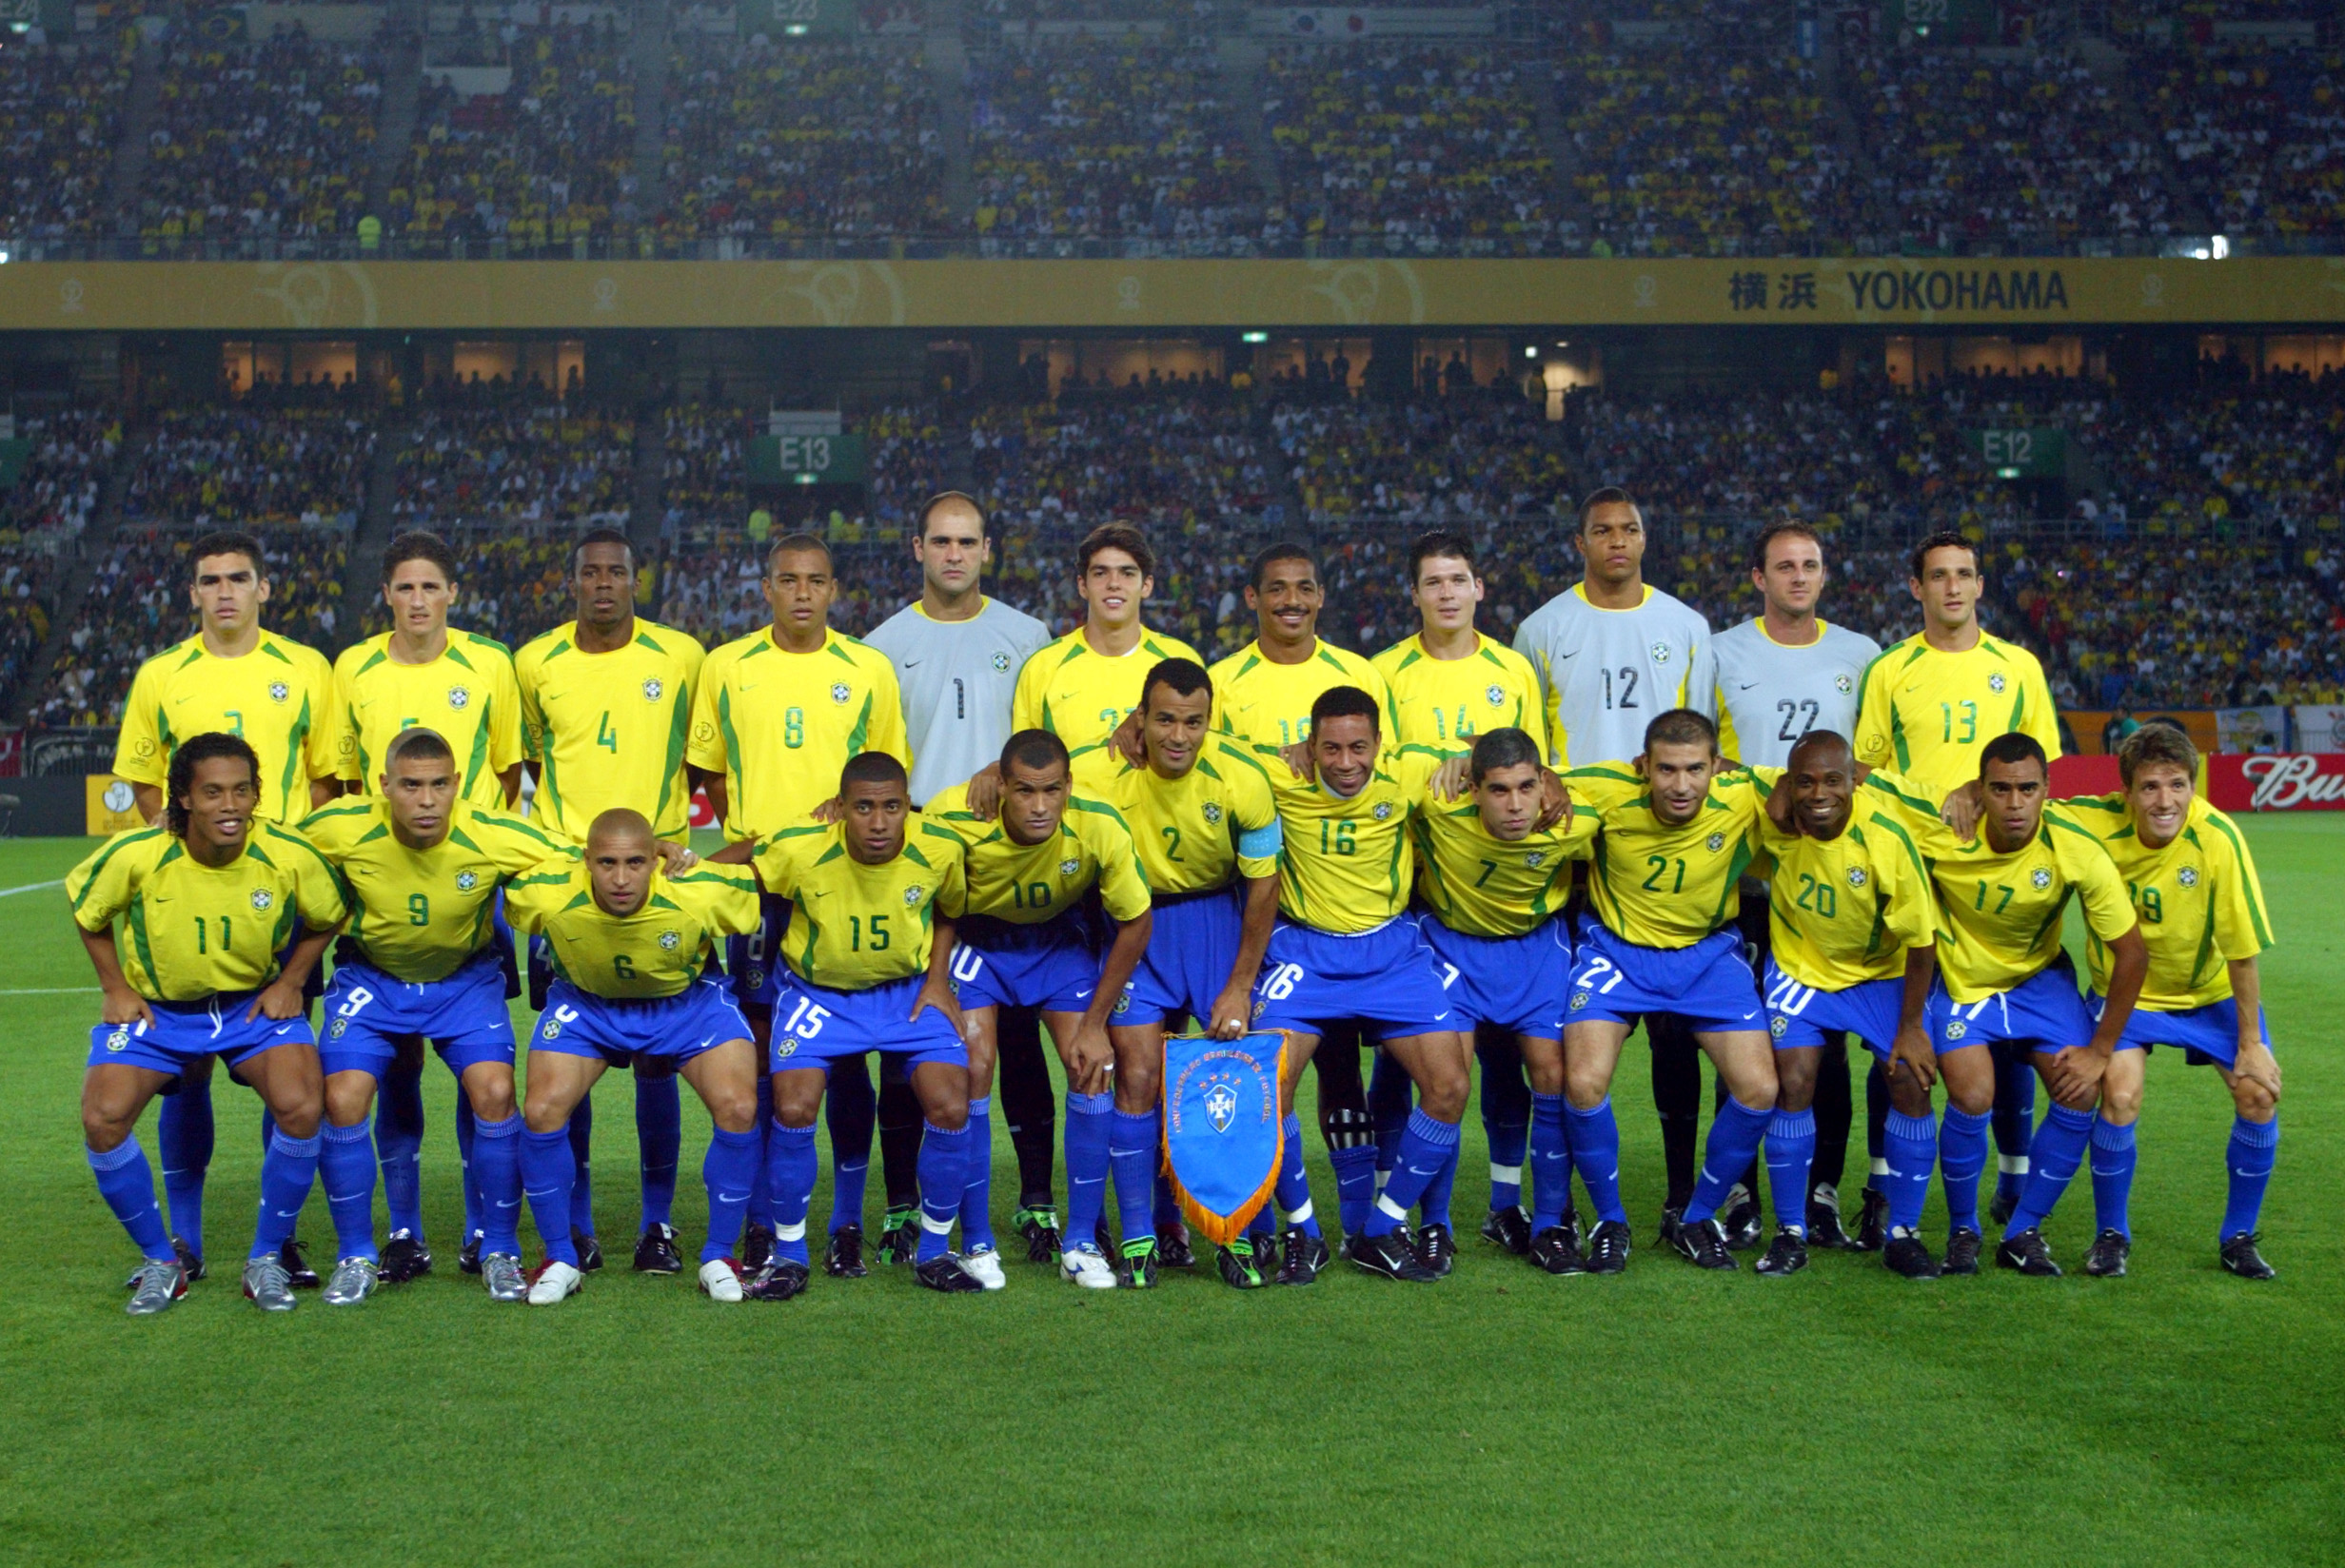 Penta do Brasil completa 18 anos: onde estão os campeões com a seleção